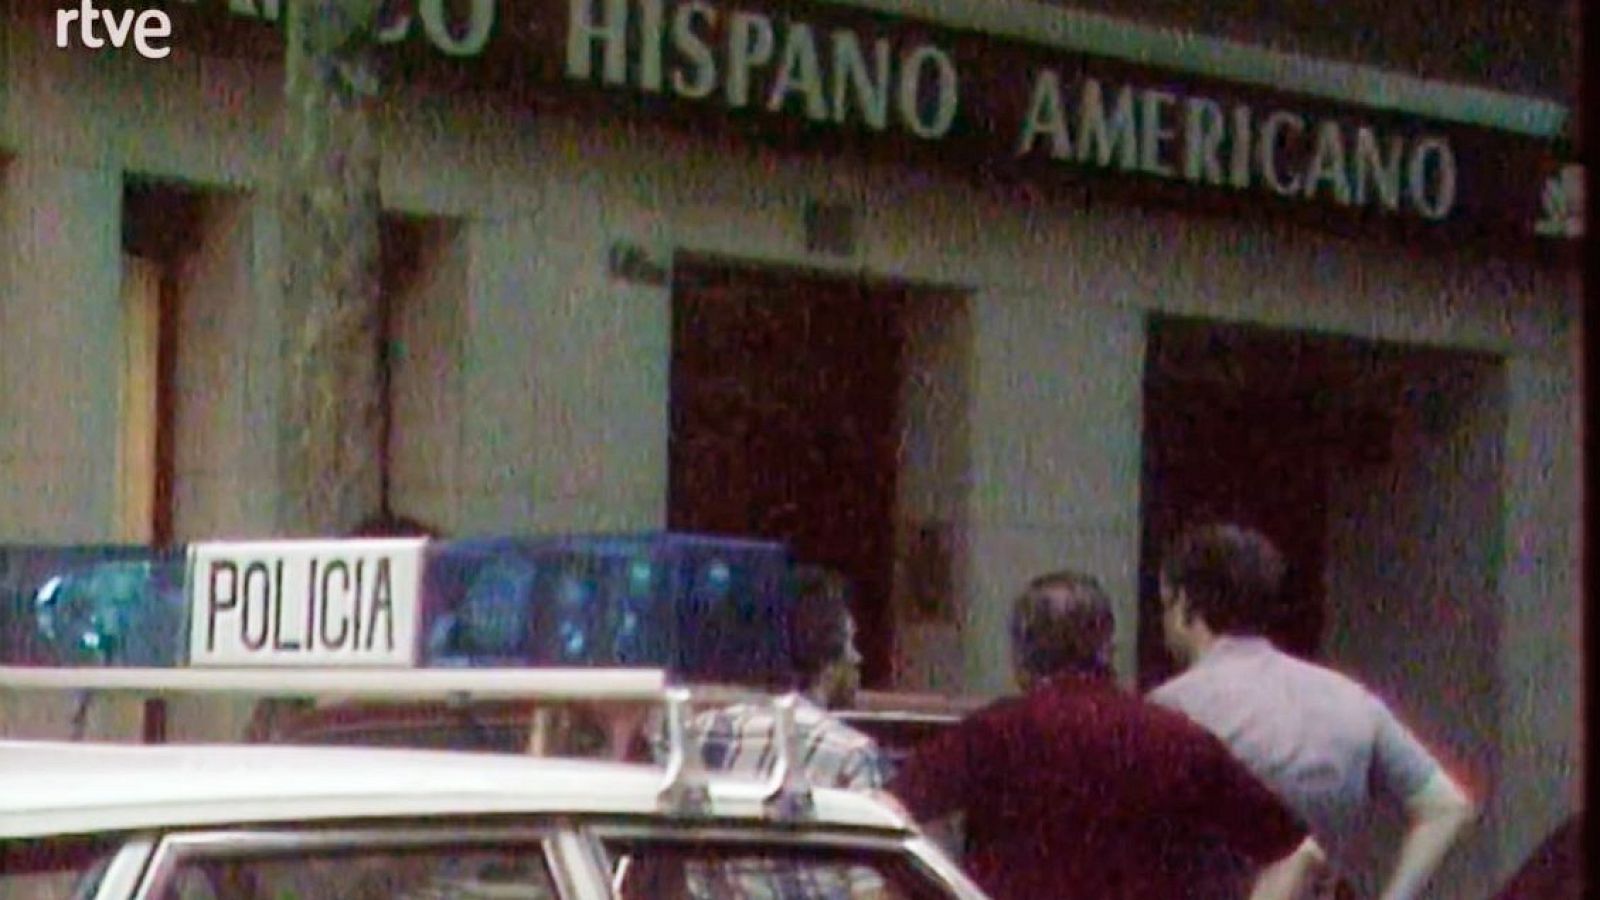 Els voltants, durant el segrest - Atracament Hispano Americano